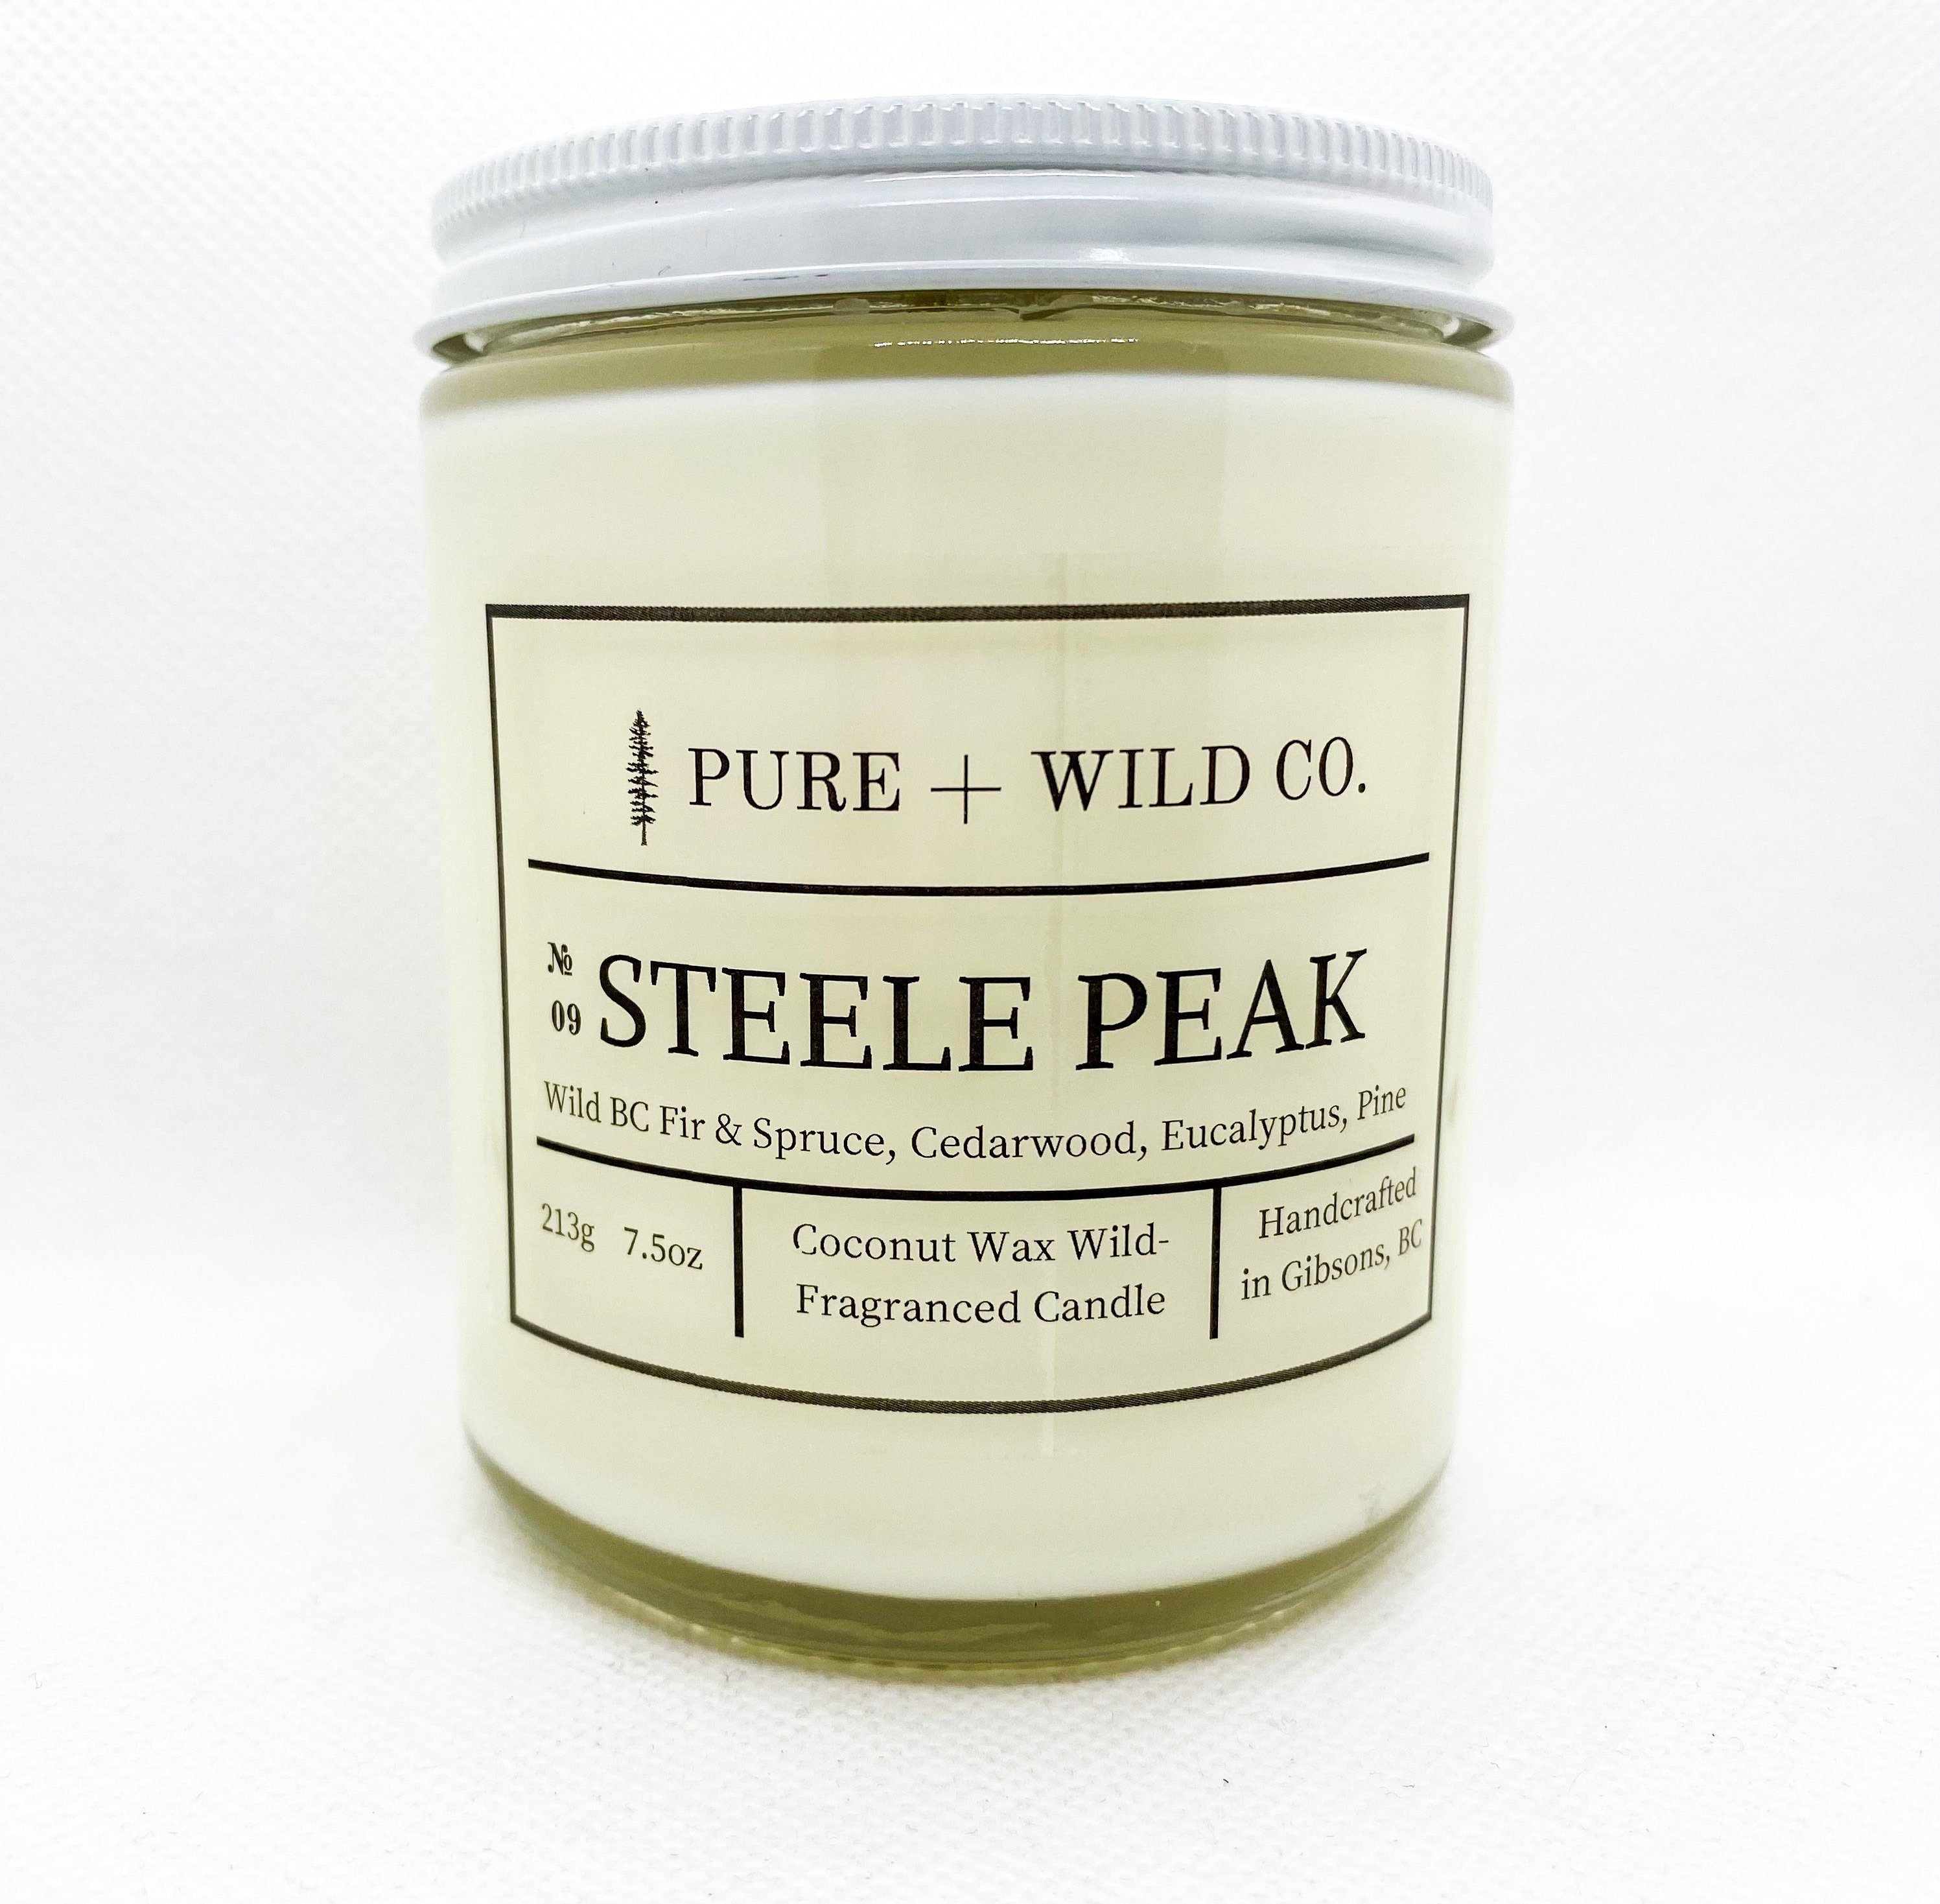 № 09 STEELE PEAK - Fir, Spruce, Cedarwood, Eucalyptus, Pine PURE + WILD CO. 